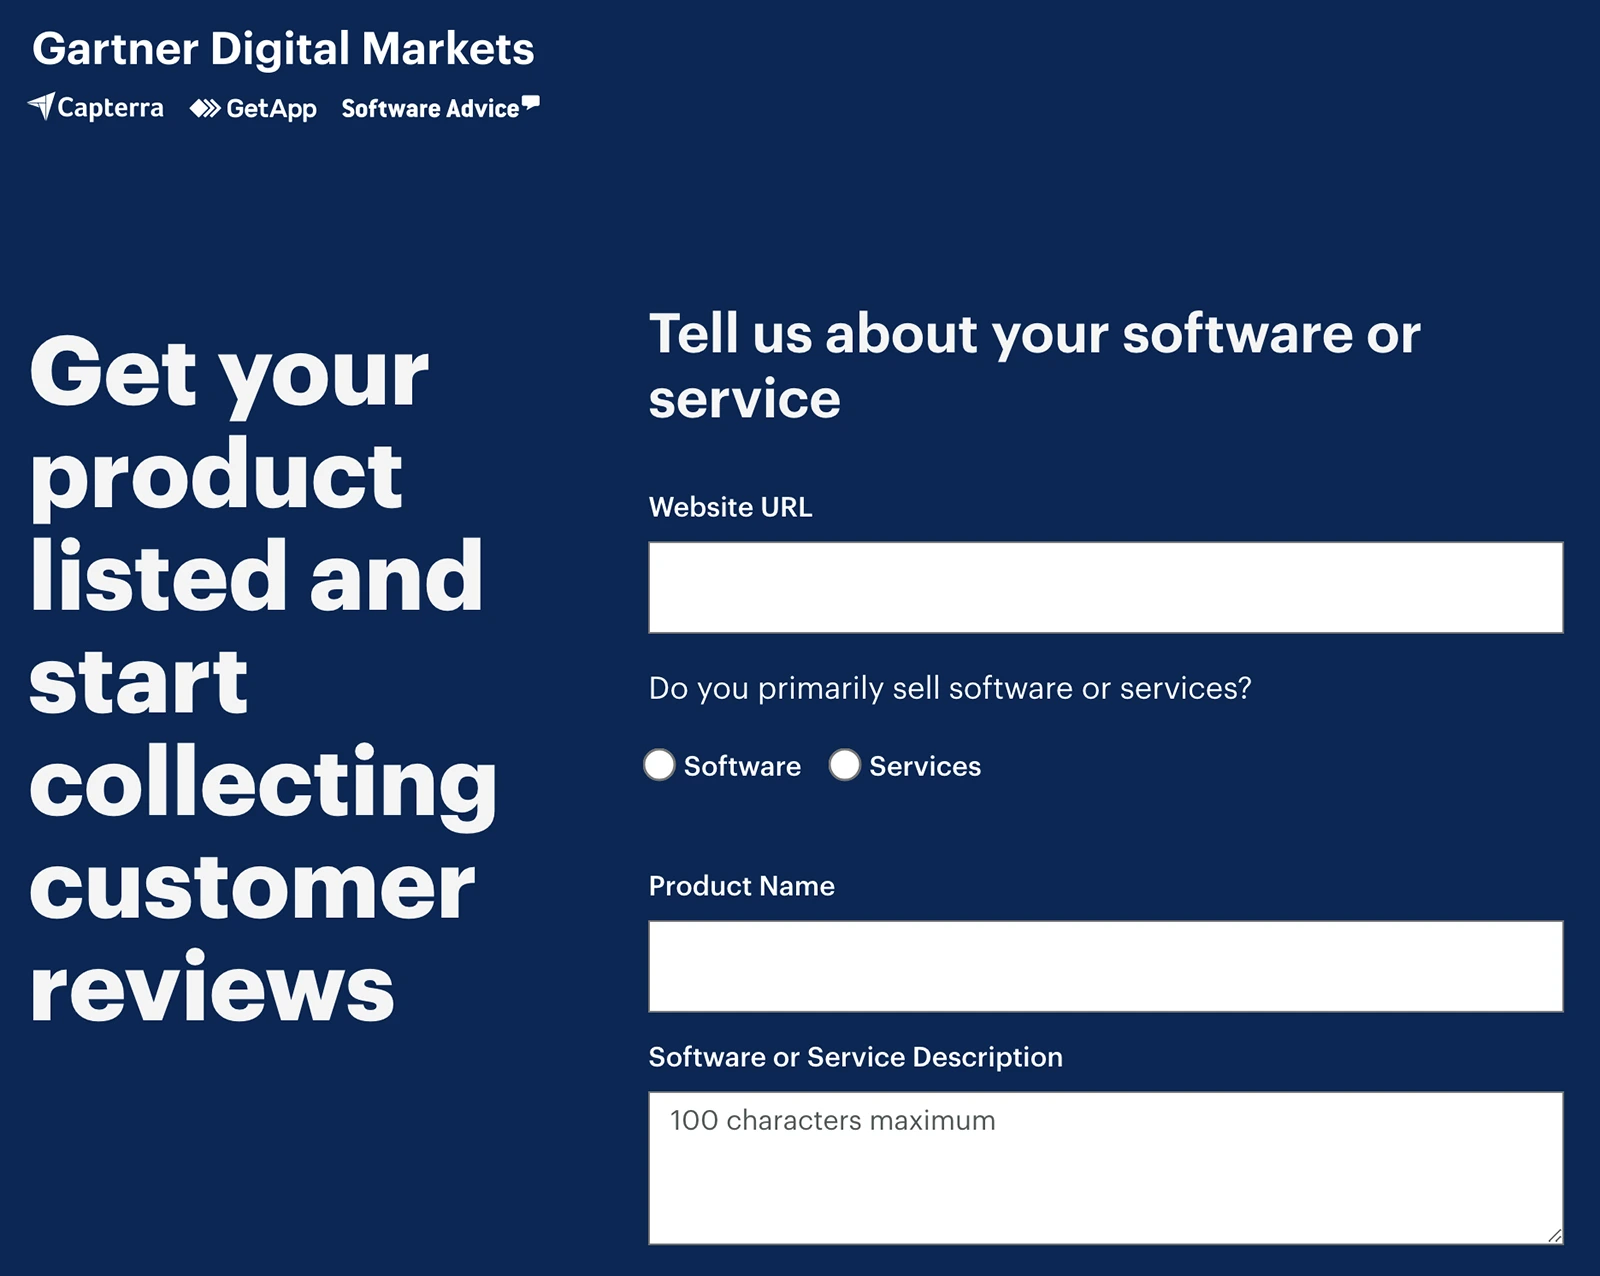 Gartner Digital Markets image